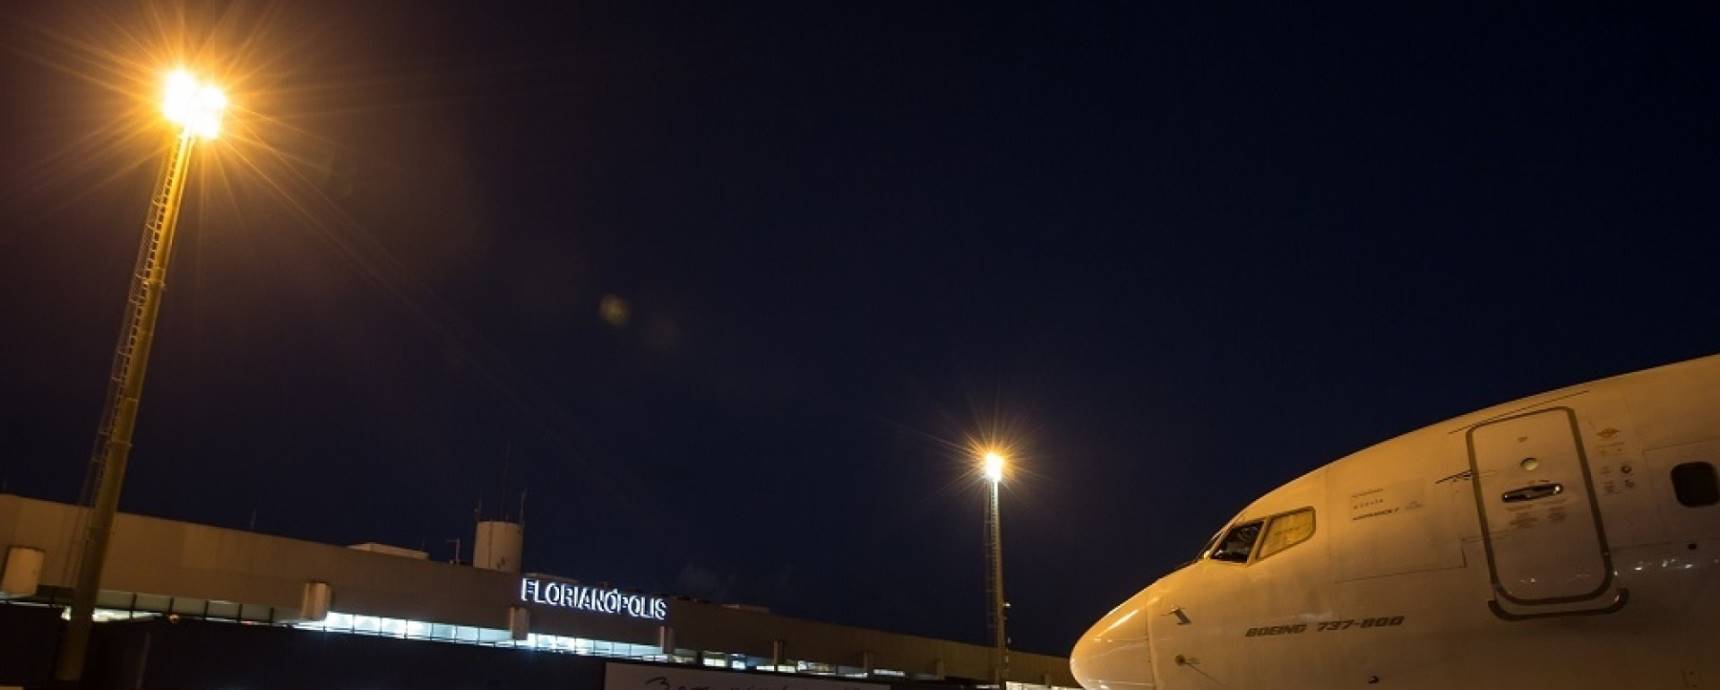 Previsão do aeroporto de Florianópolis é operar sem restrições nesta sexta-feira. Situação pode se agravar no sábado